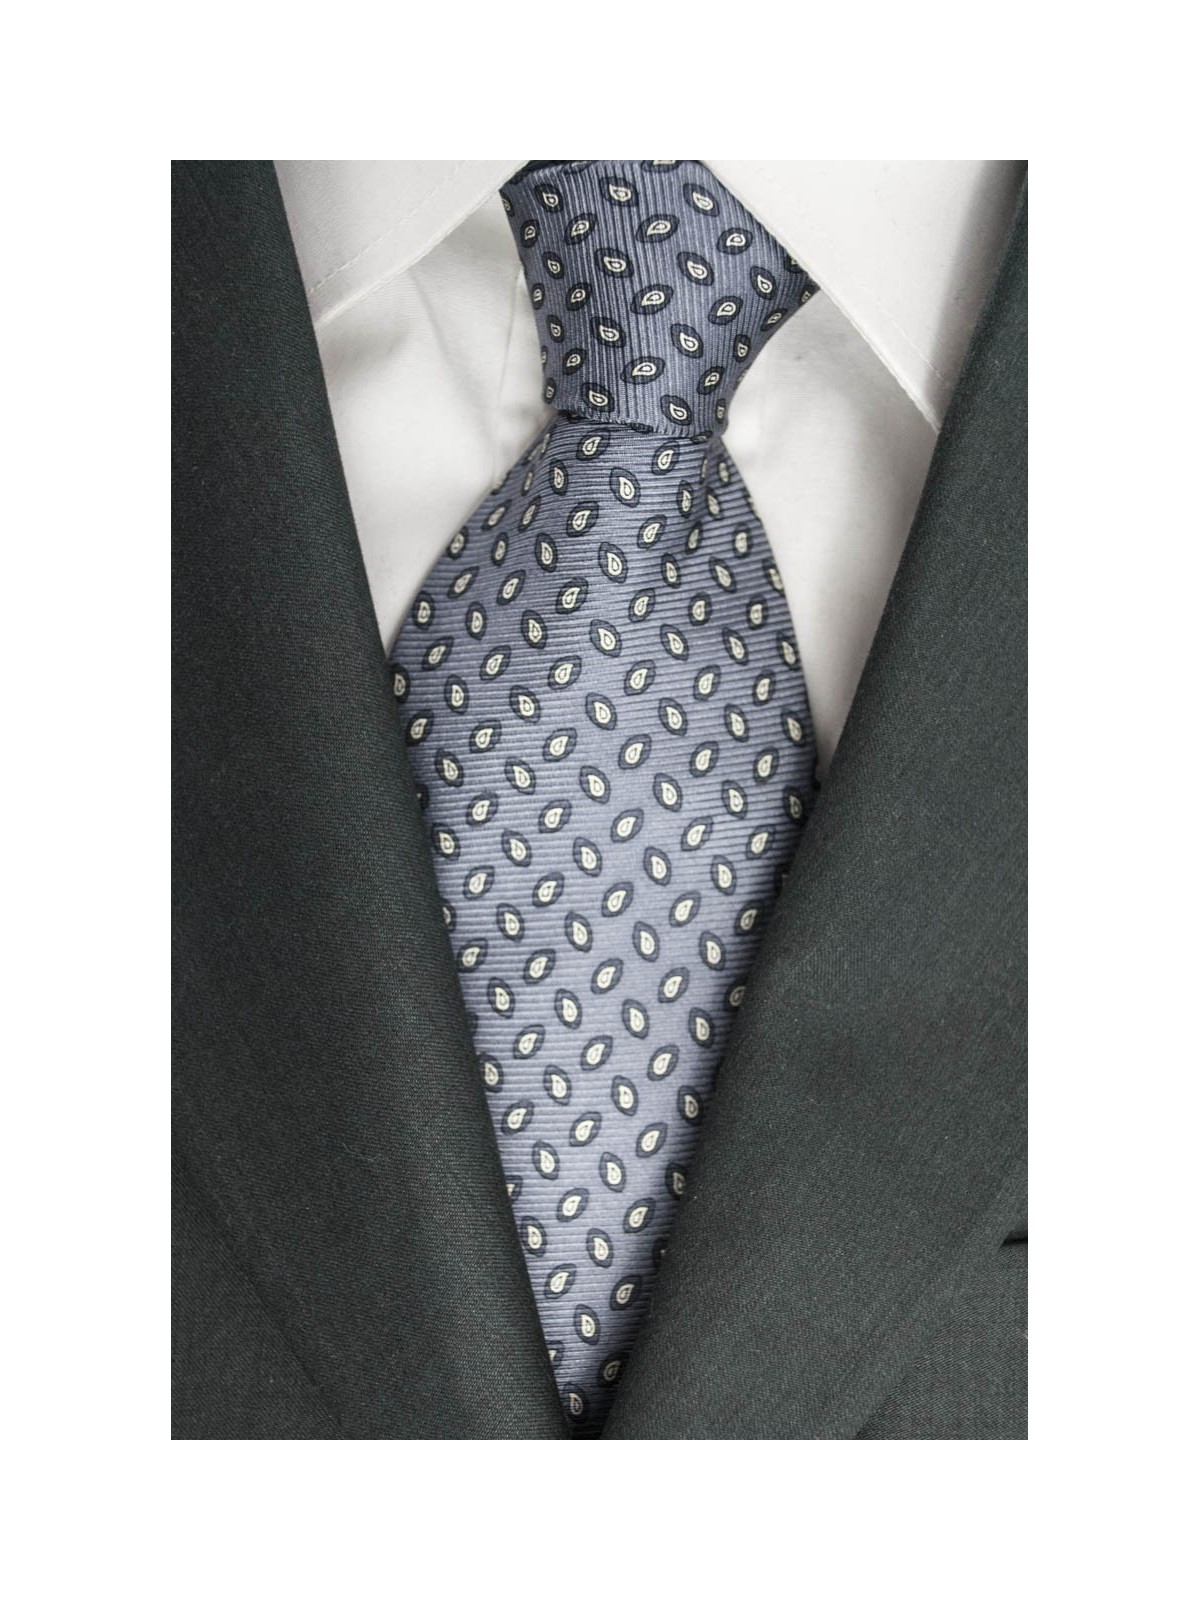 Tie Grey Small Designs in White and Dark Grey - Laura Biagiotti - 100% Pure Silk